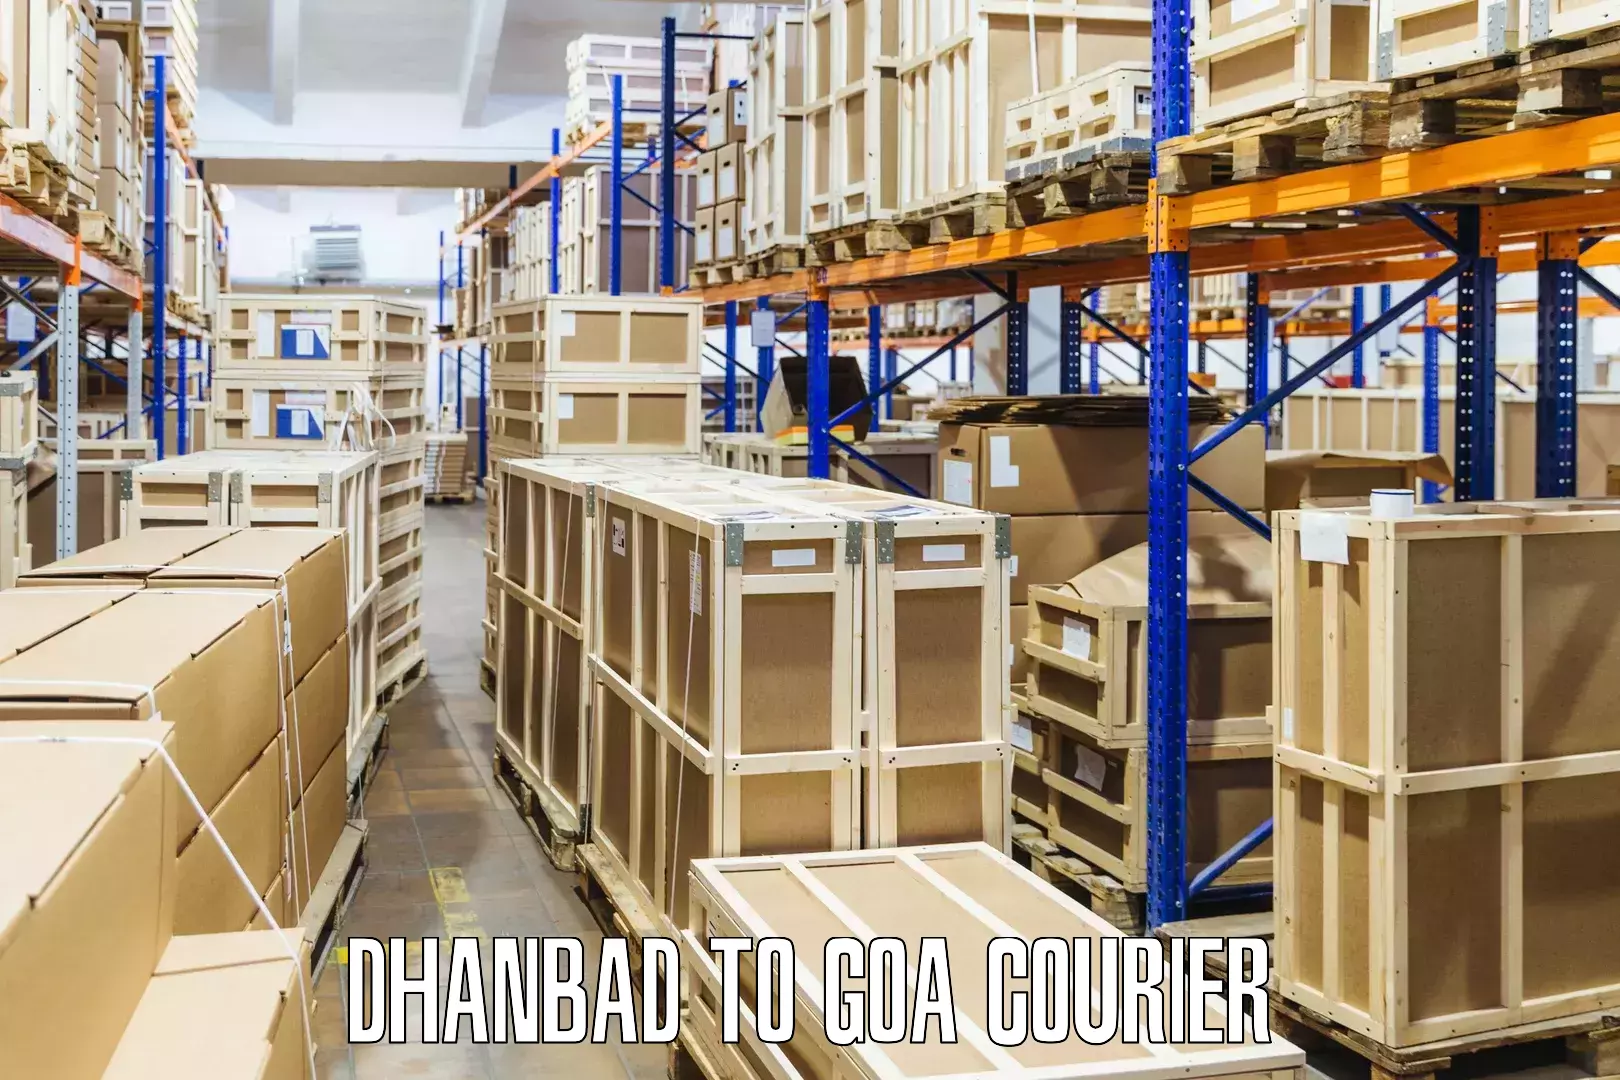 Urgent courier needs Dhanbad to IIT Goa